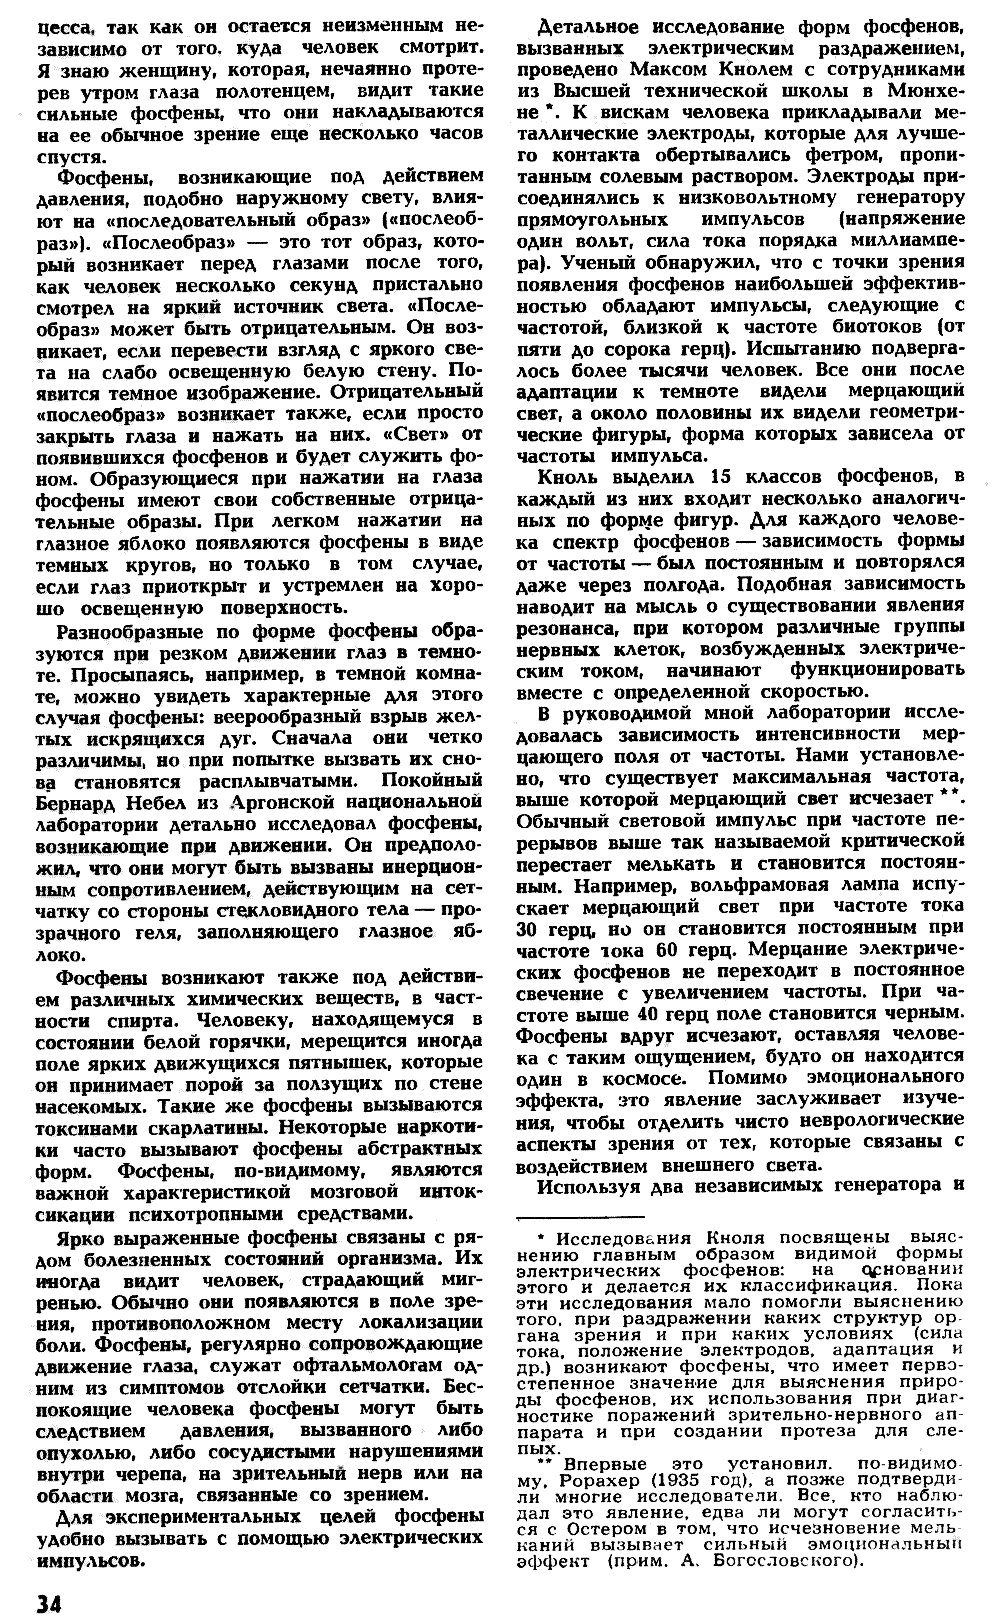 Фосфены. Г. Остер. Наука и жизнь, 1971, №4, с.33-37 (вкладка). Фотокопия №3